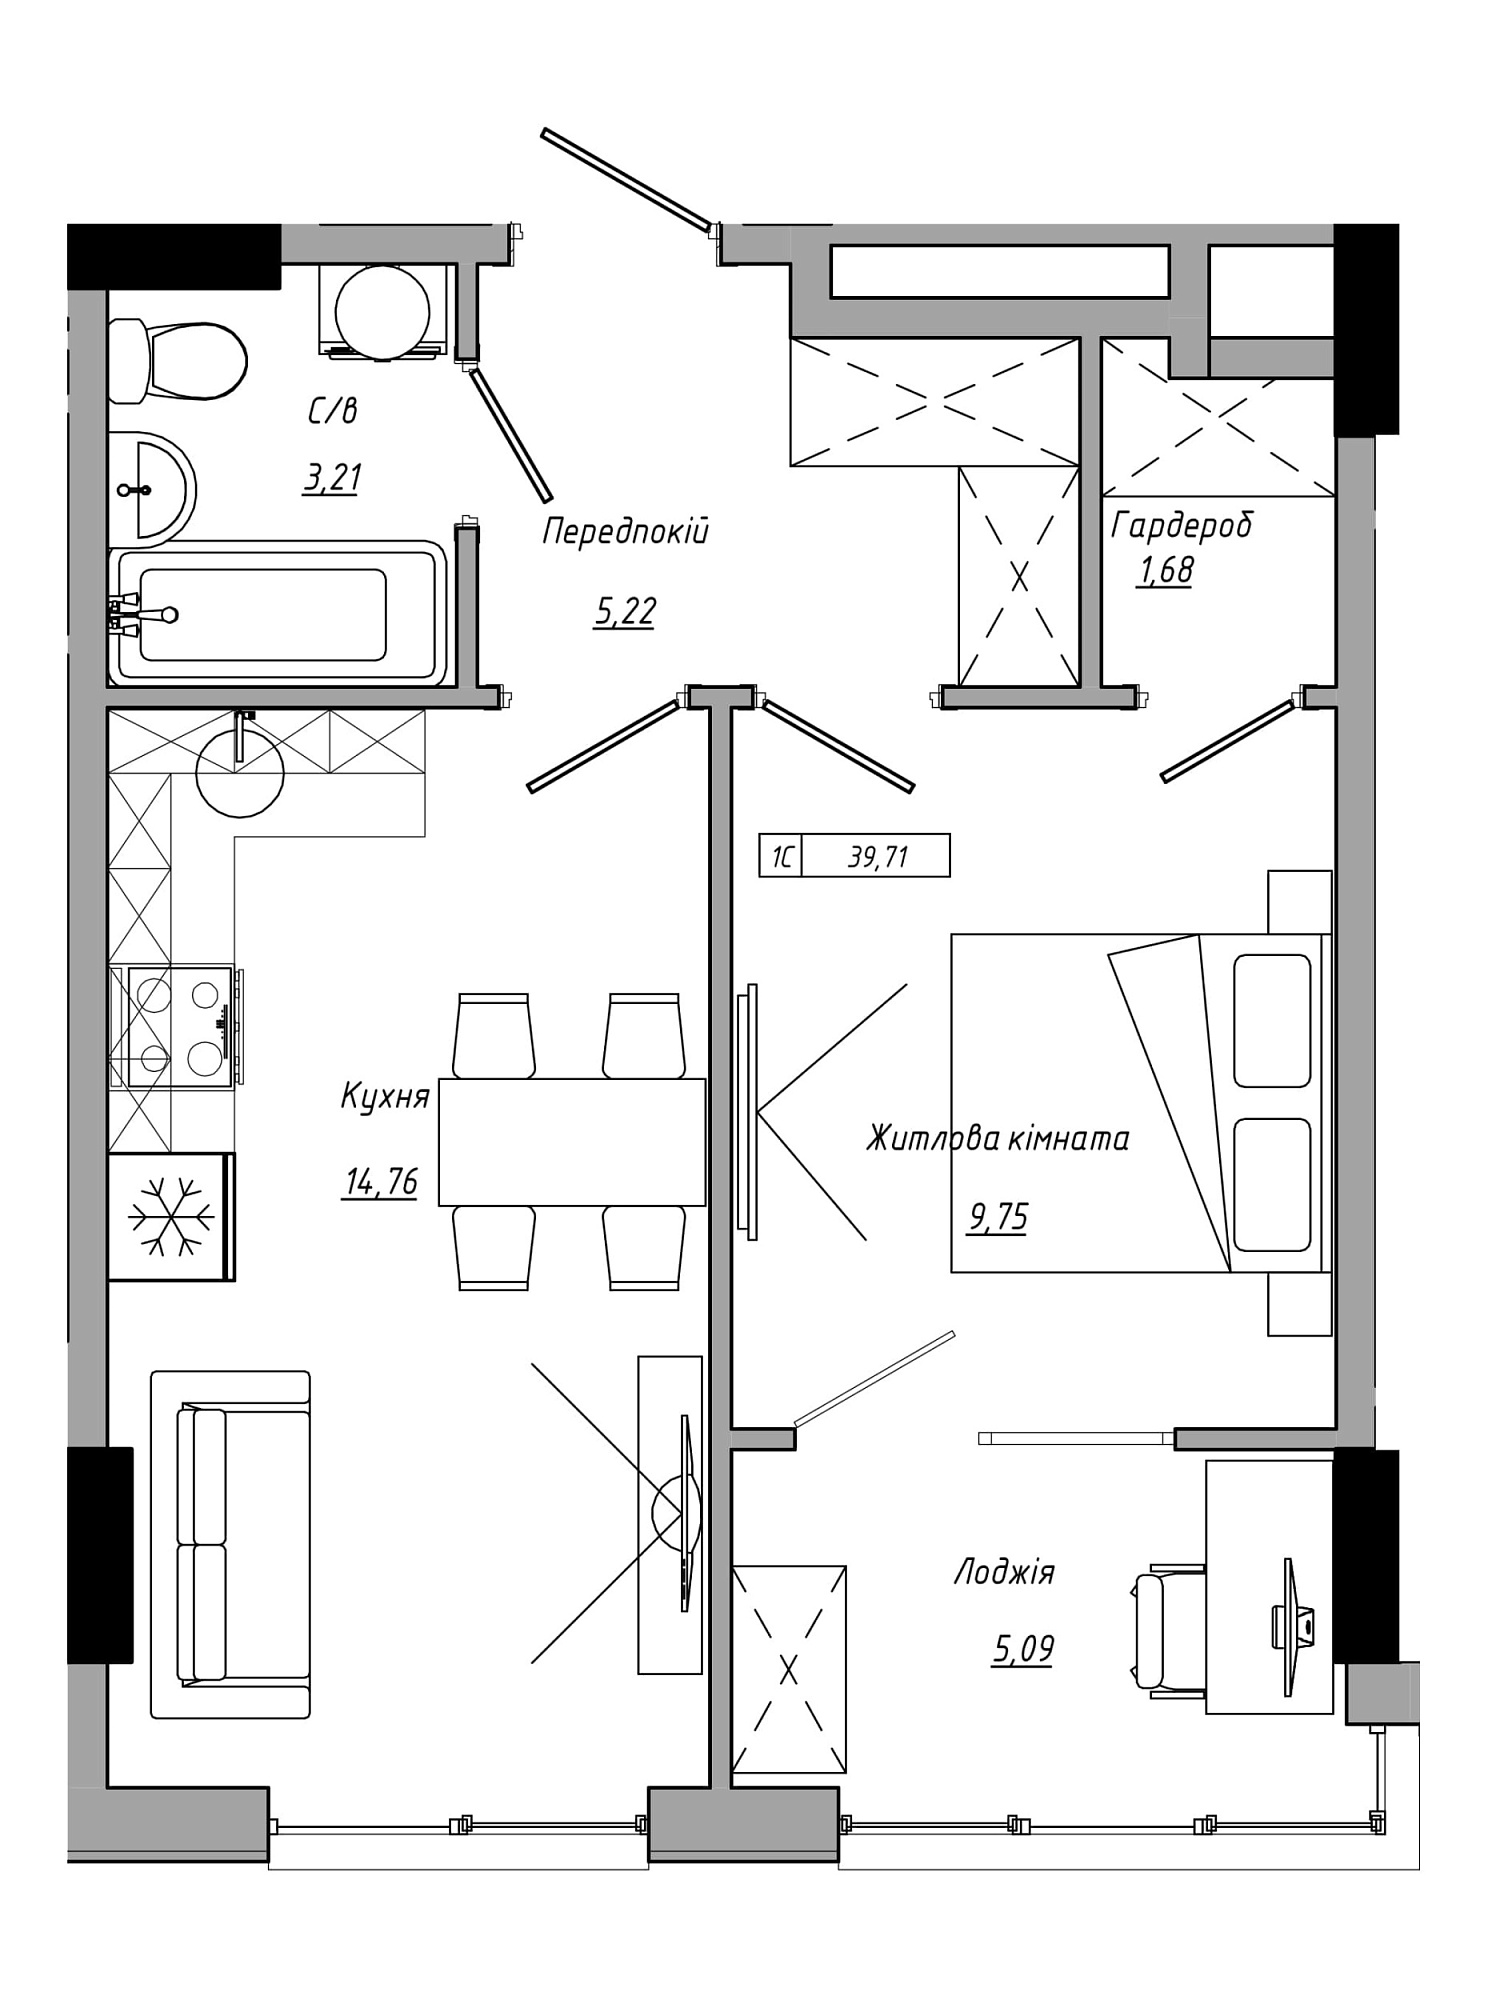 Планування 1-к квартира площею 39.71м2, AB-21-05/00021.